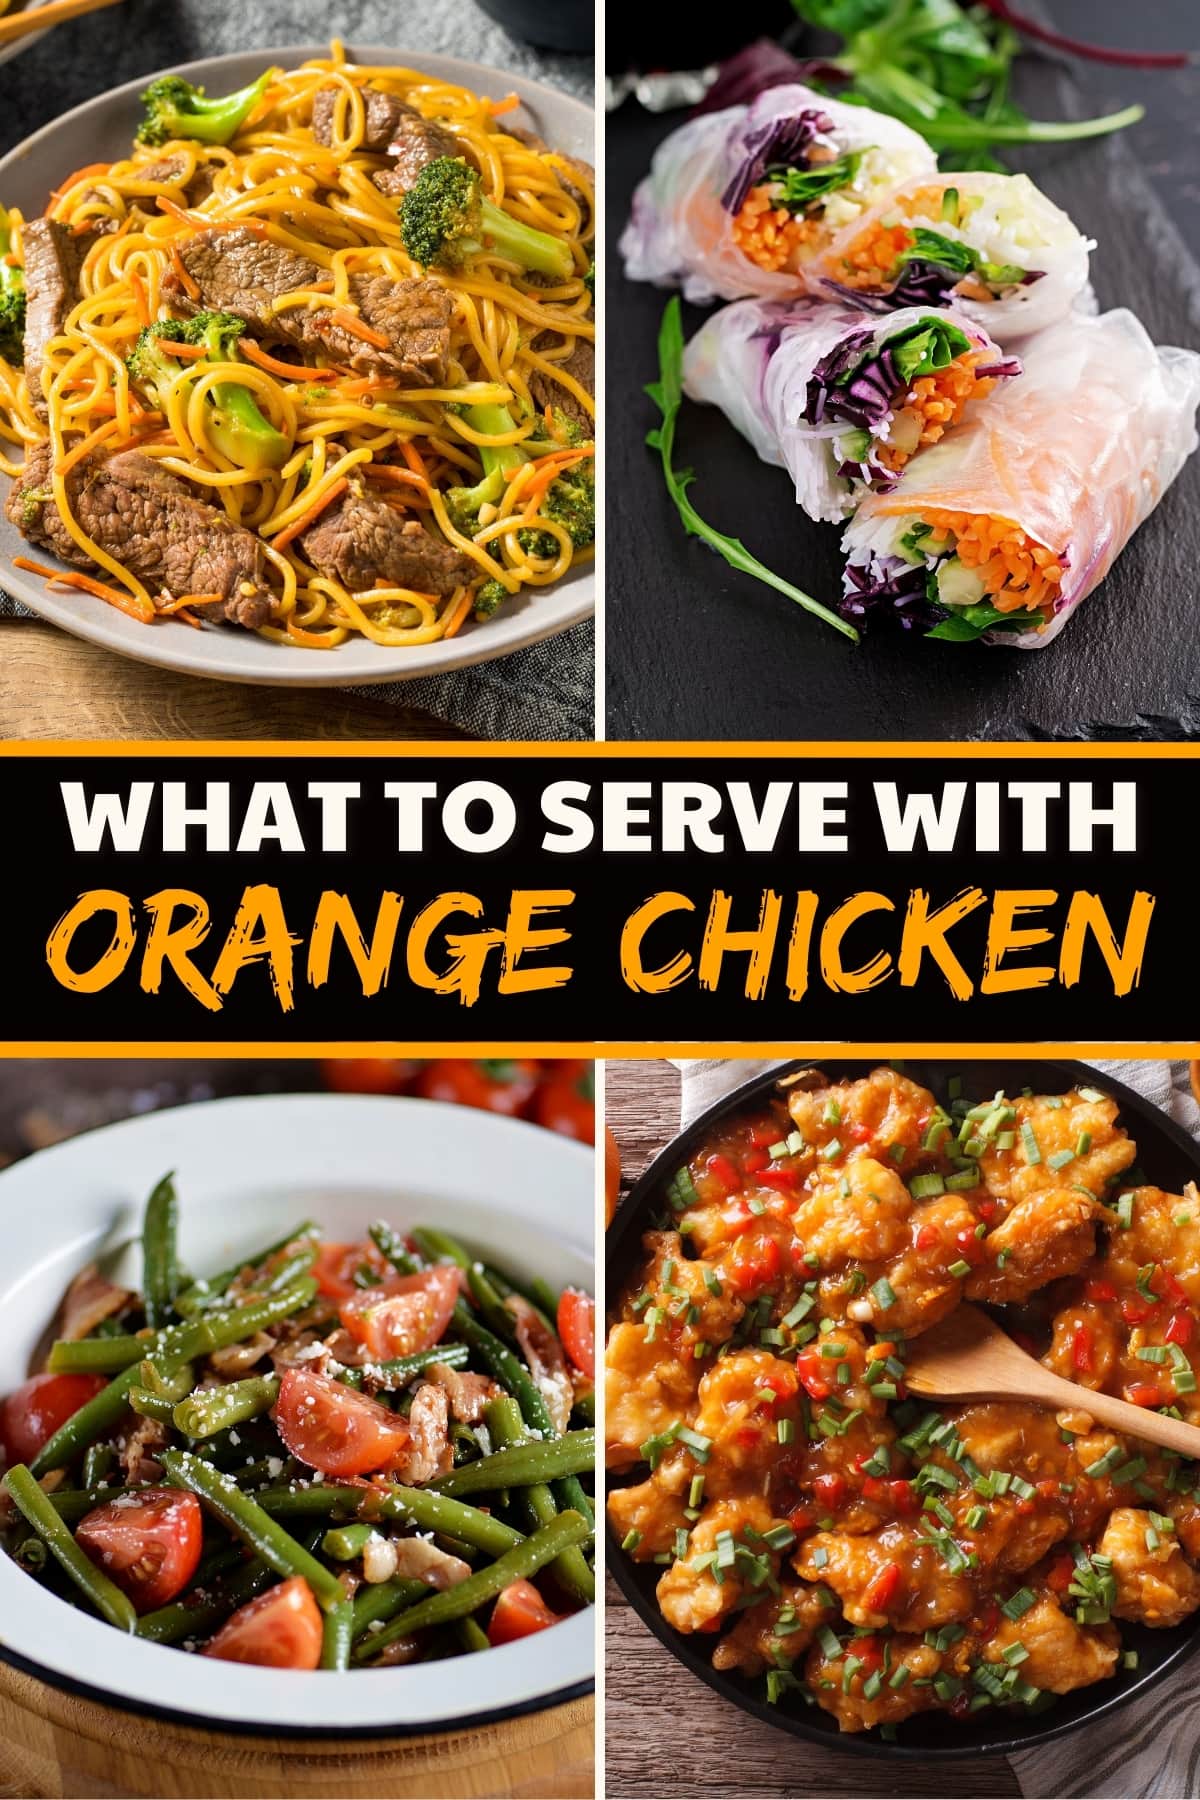 What to Serve with Orange Chicken